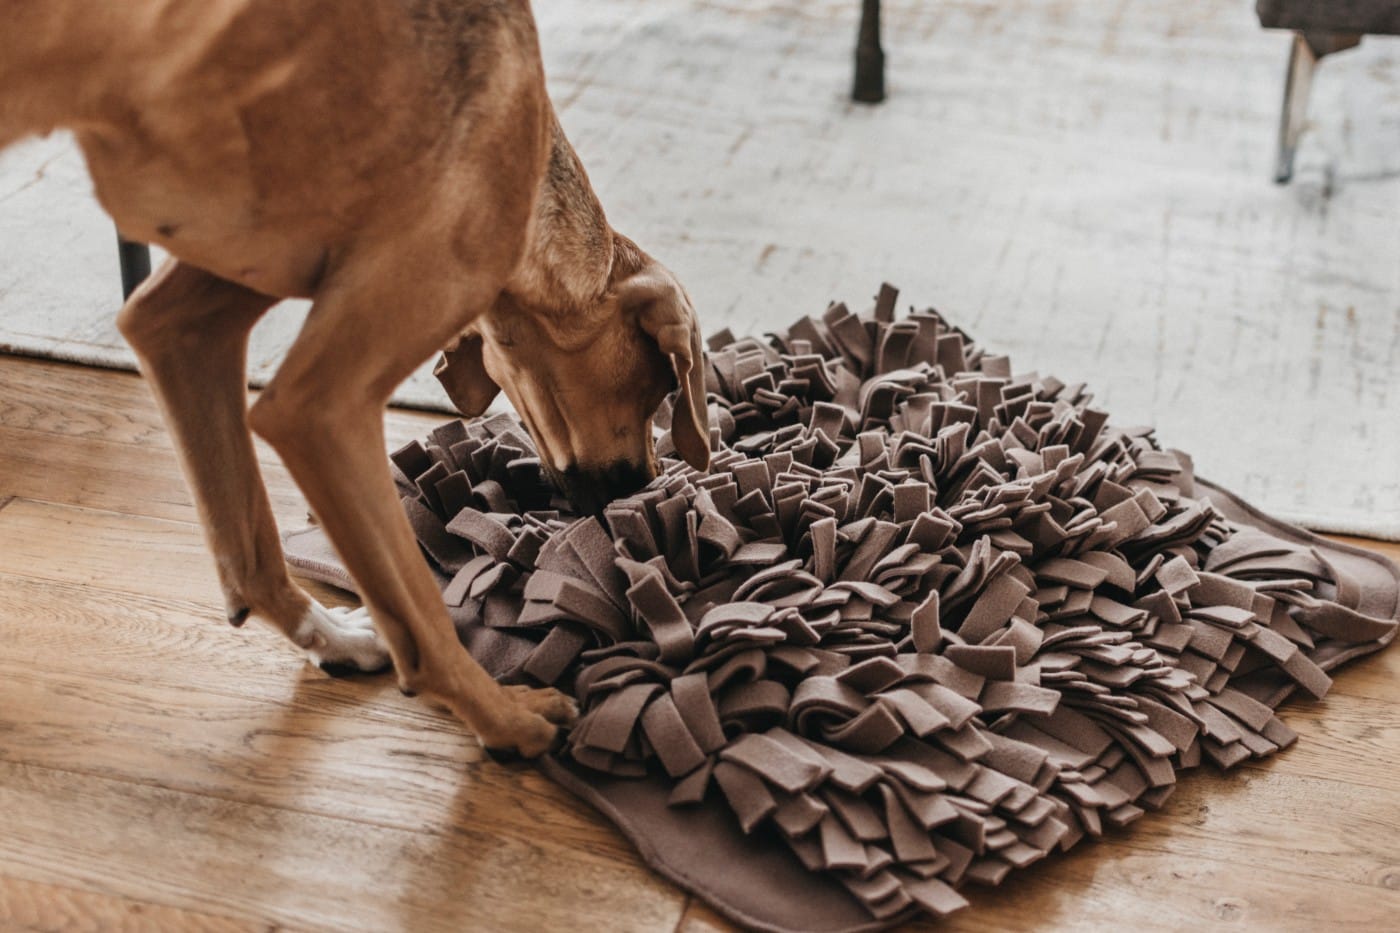 Brauner Hund spielt mit braun-grauem Fransenteppich als Intelligenz Spiezeug für Hunde zum erschnüffeln von Leckerli | LILA LOVES IT "Schnüffelteppich für Hunde"